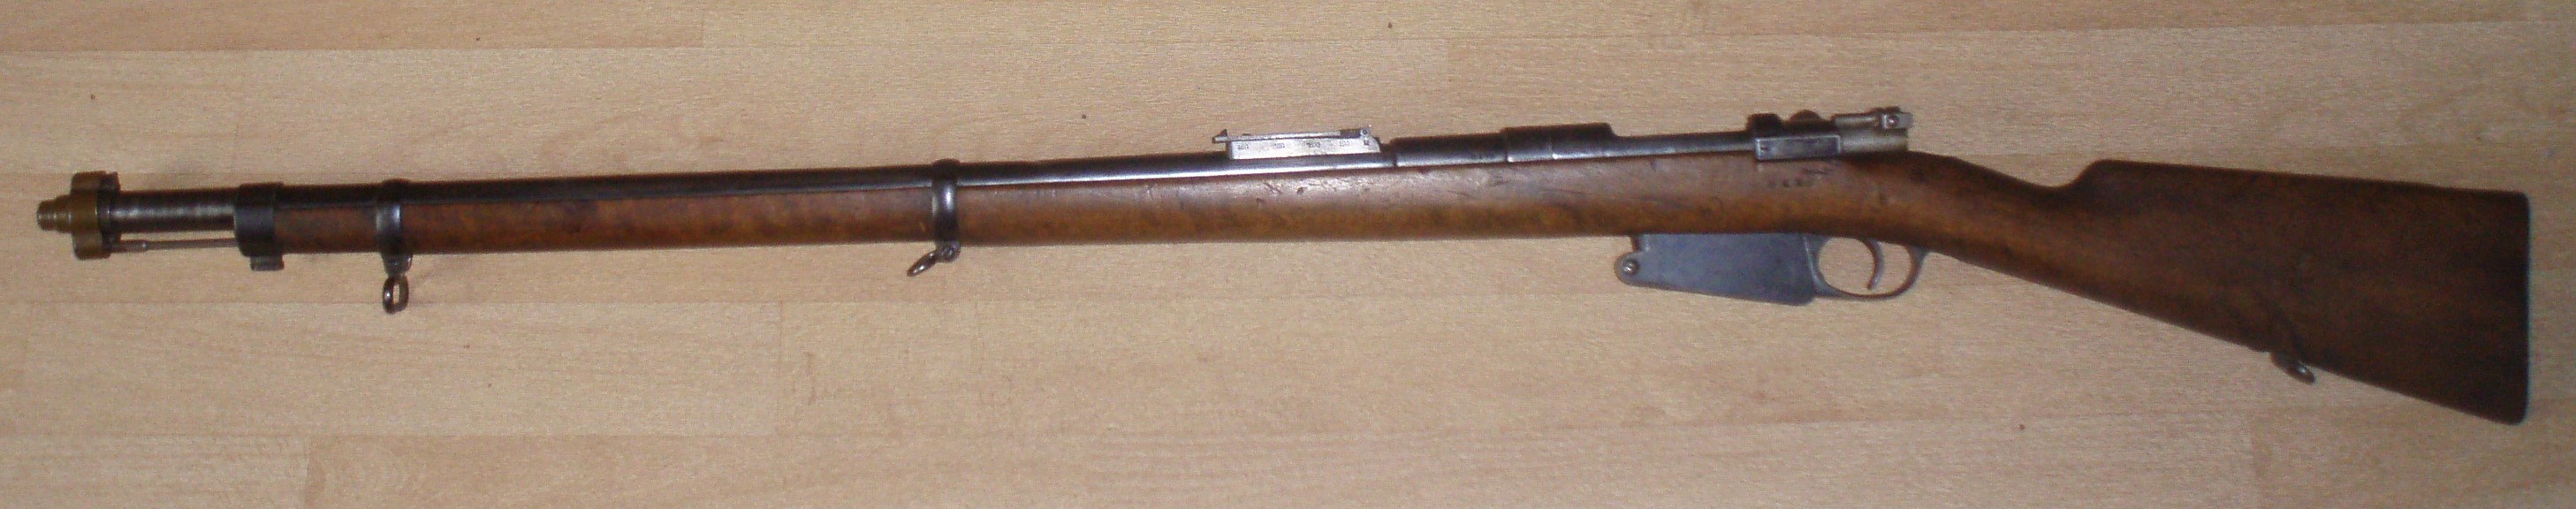 Mauser Belge Mle 1889